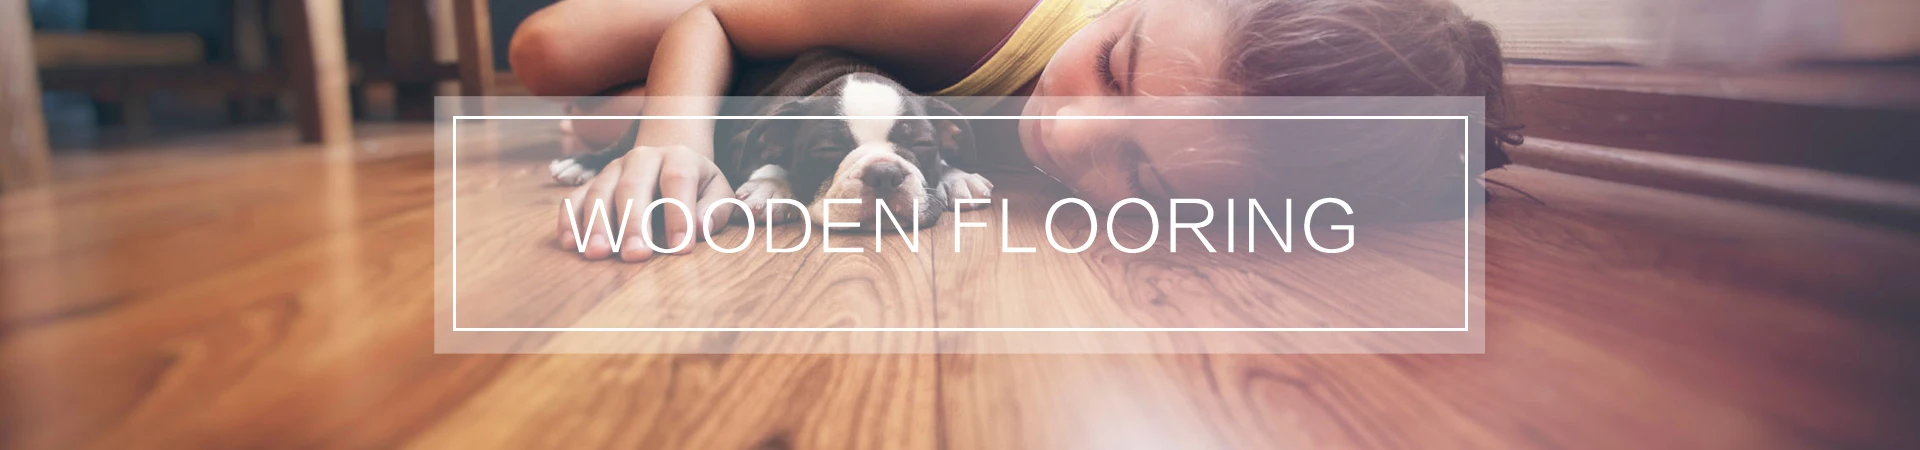 BBL Floor 5.5 mm Ash Oak WPC CLICK VINYL FLOORING LVT COMPOSITE VINYL FLOORS